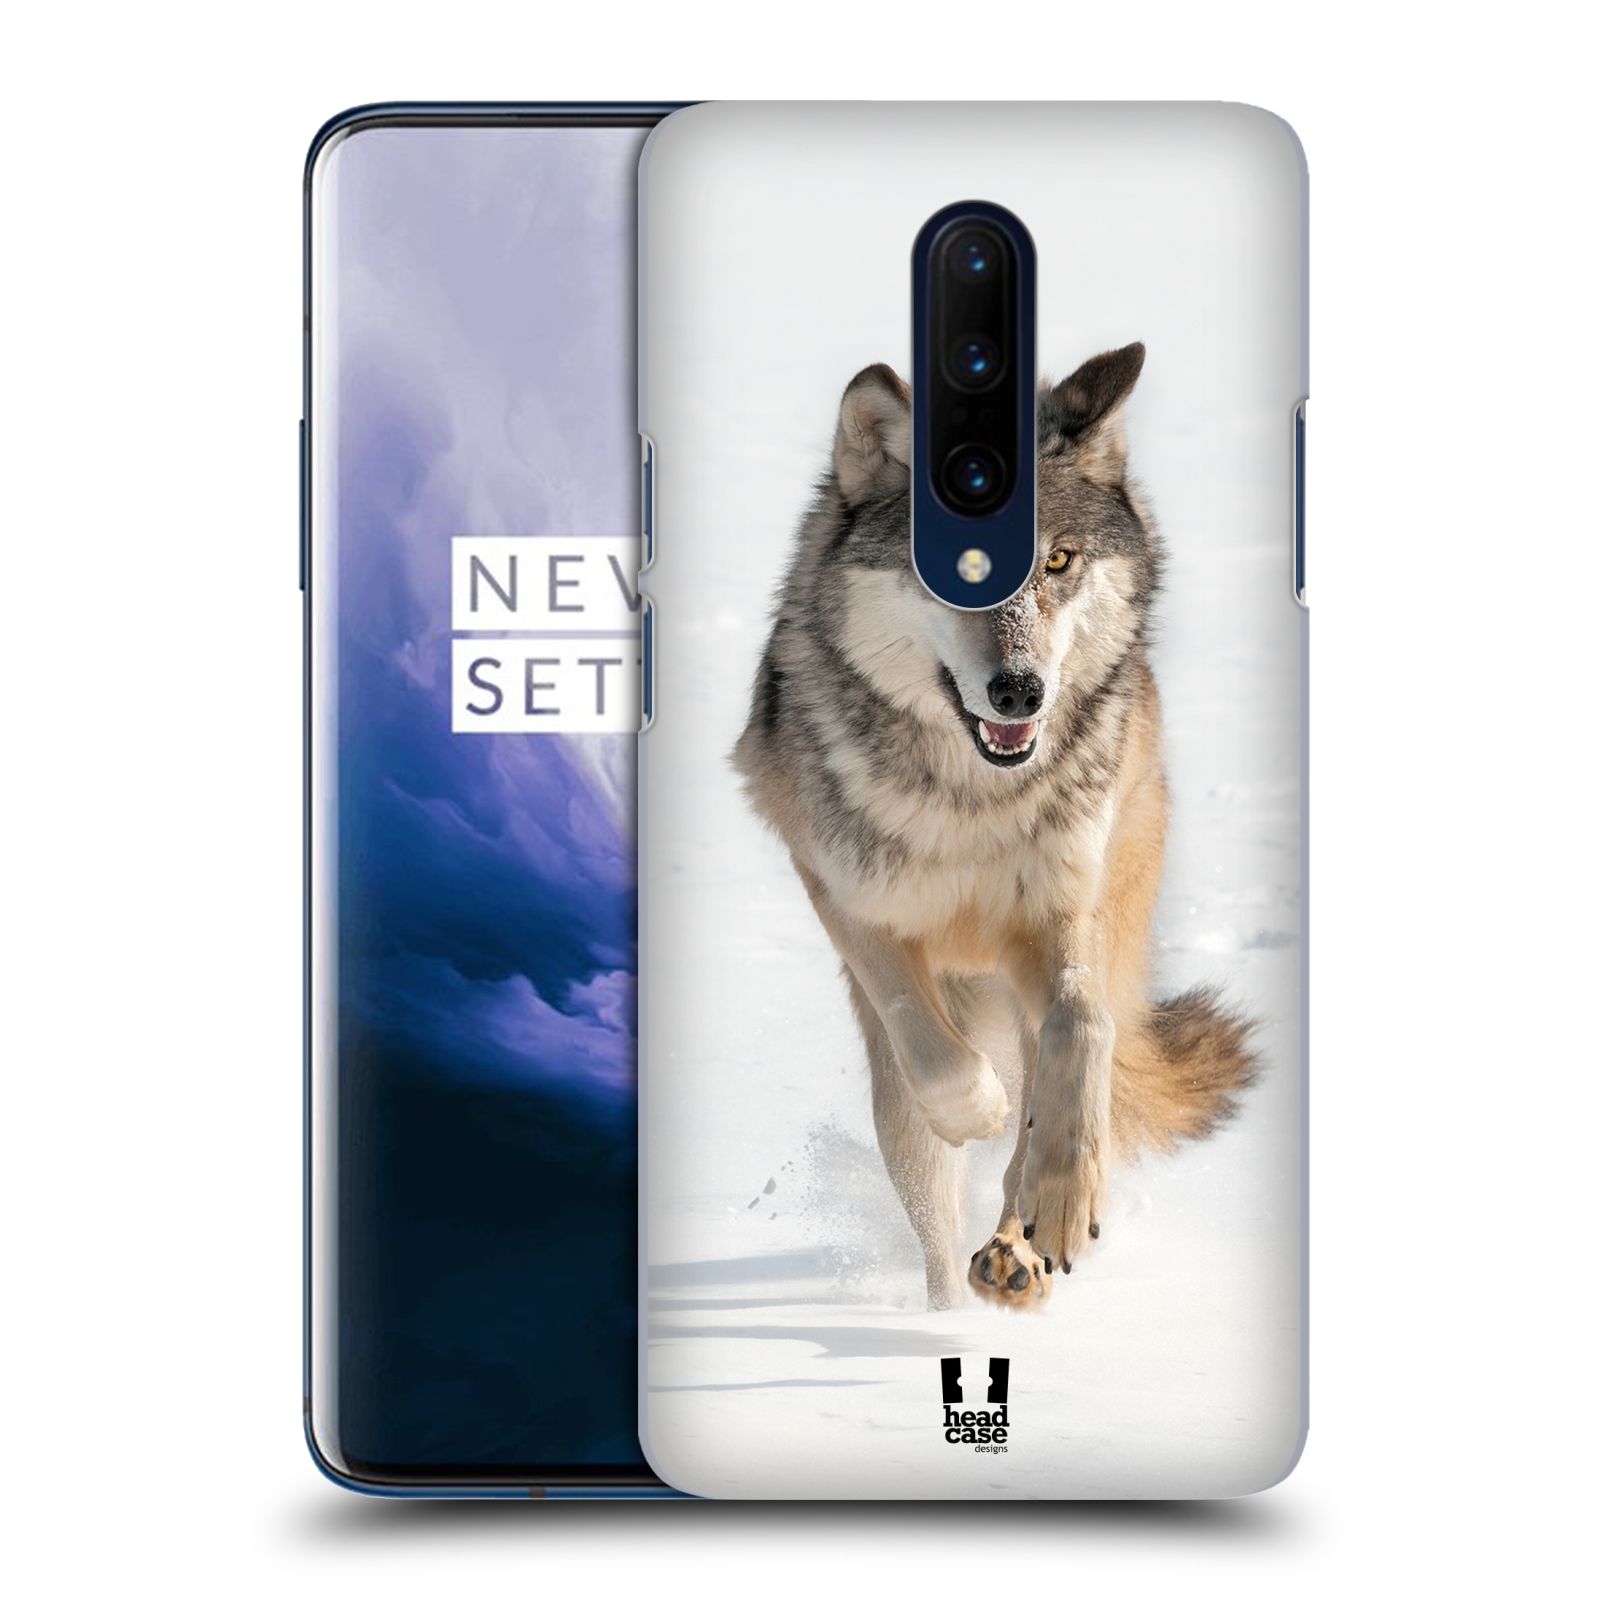 Zadní obal pro mobil OnePlus 7 PRO - HEAD CASE - Svět zvířat divoký vlk